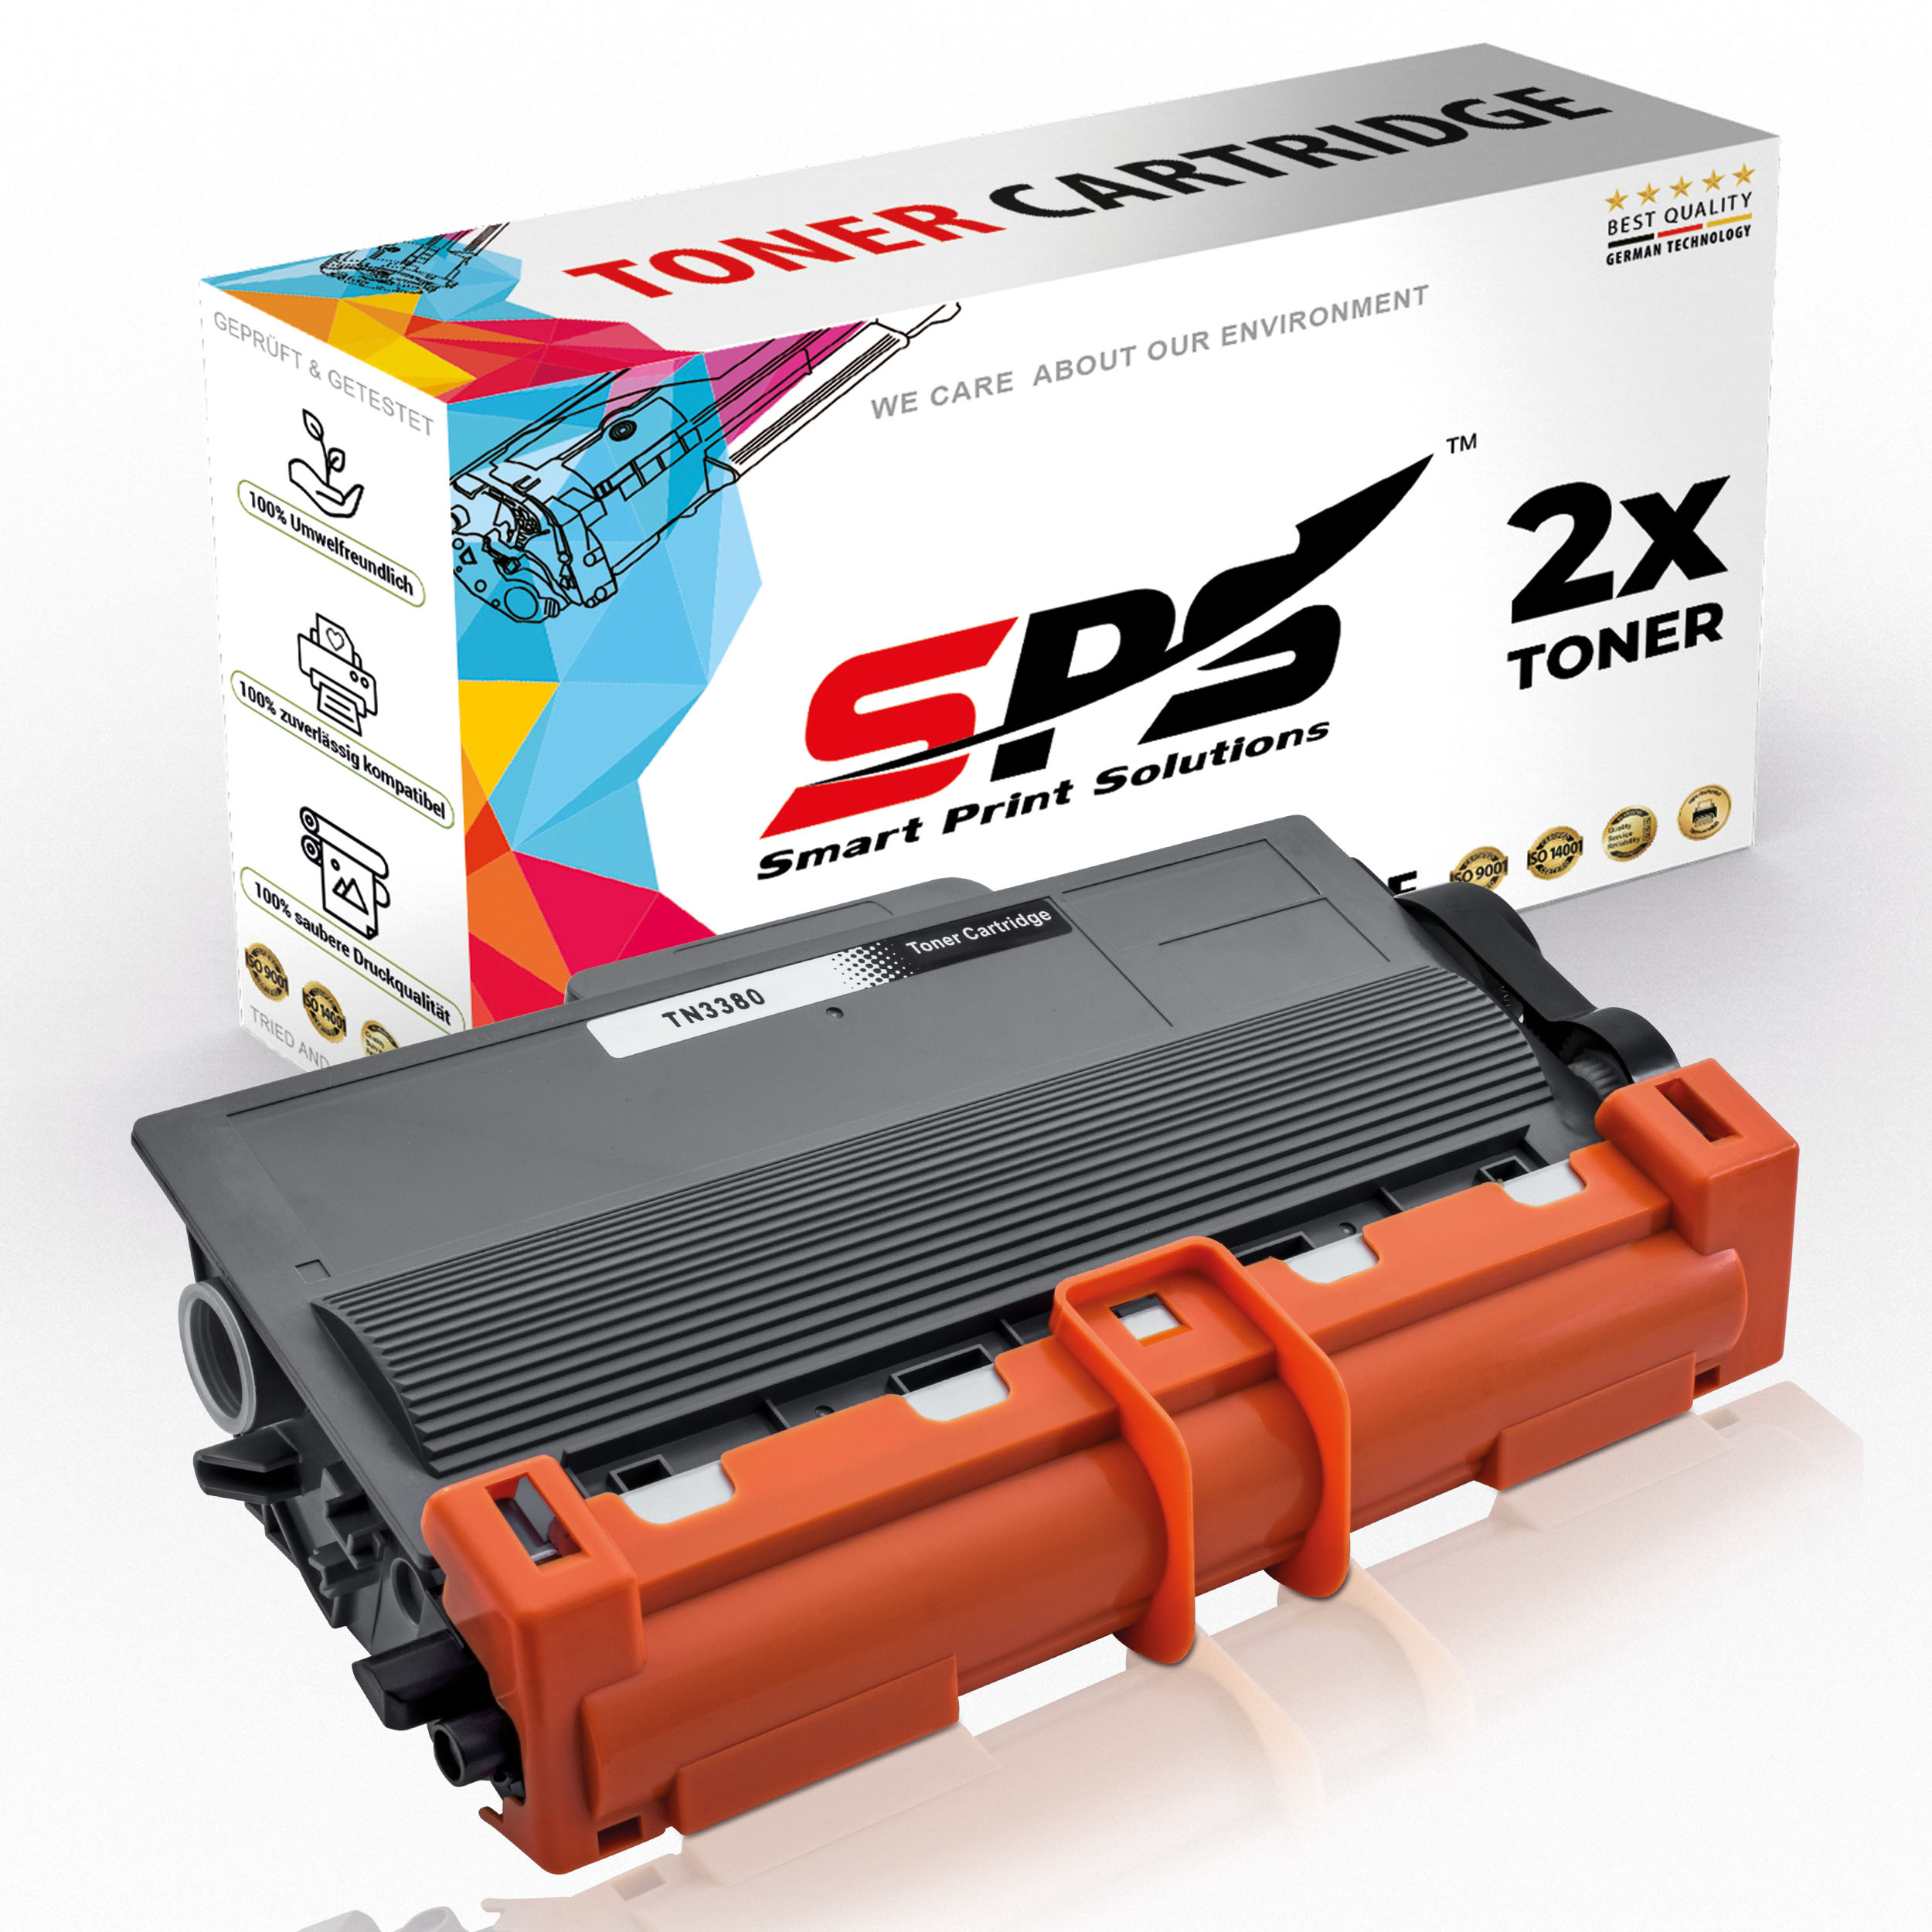 SPS S-9942 / Toner (TN3380 Schwarz DCP-8010DN)